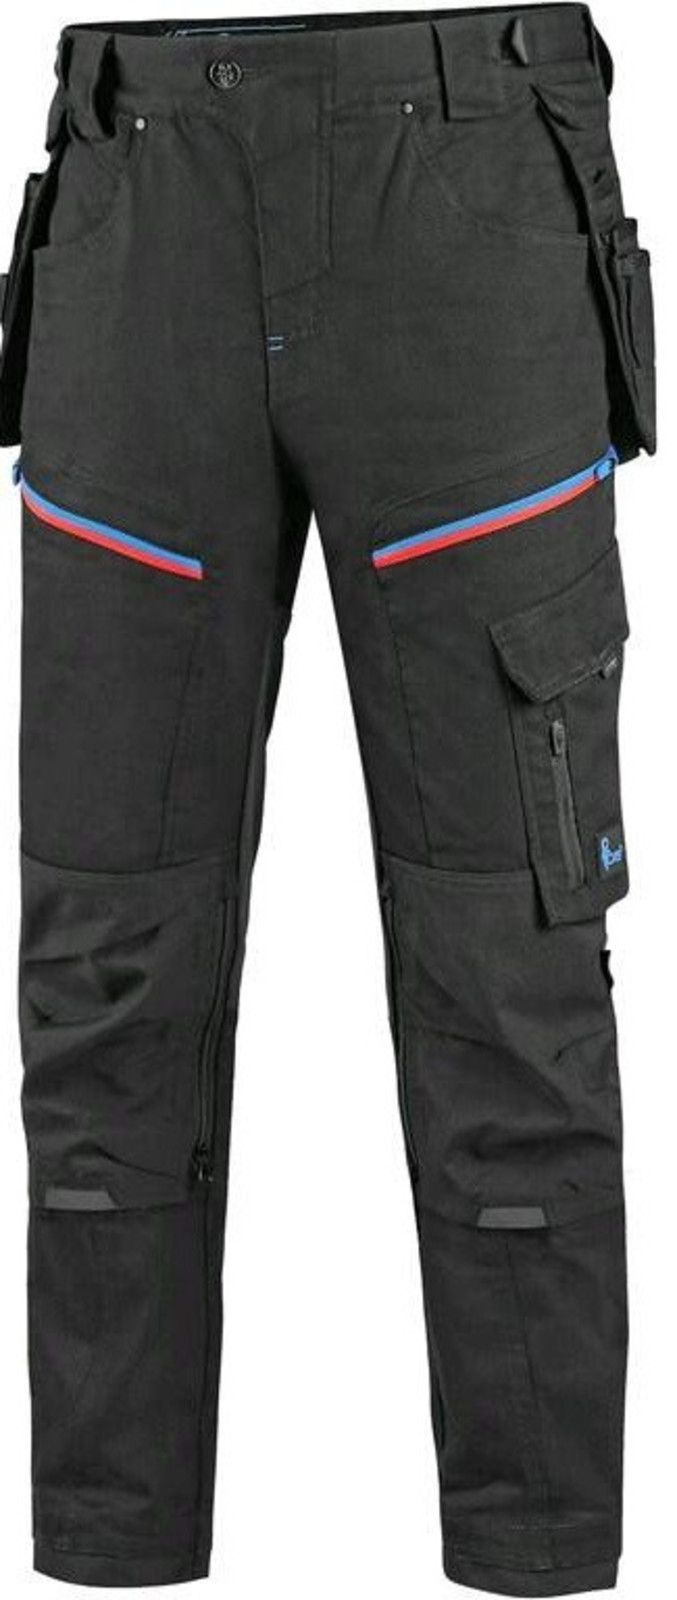 Pánske pracovné nohavice CXS Leonis - veľkosť: 54, farba: čierna/modrá